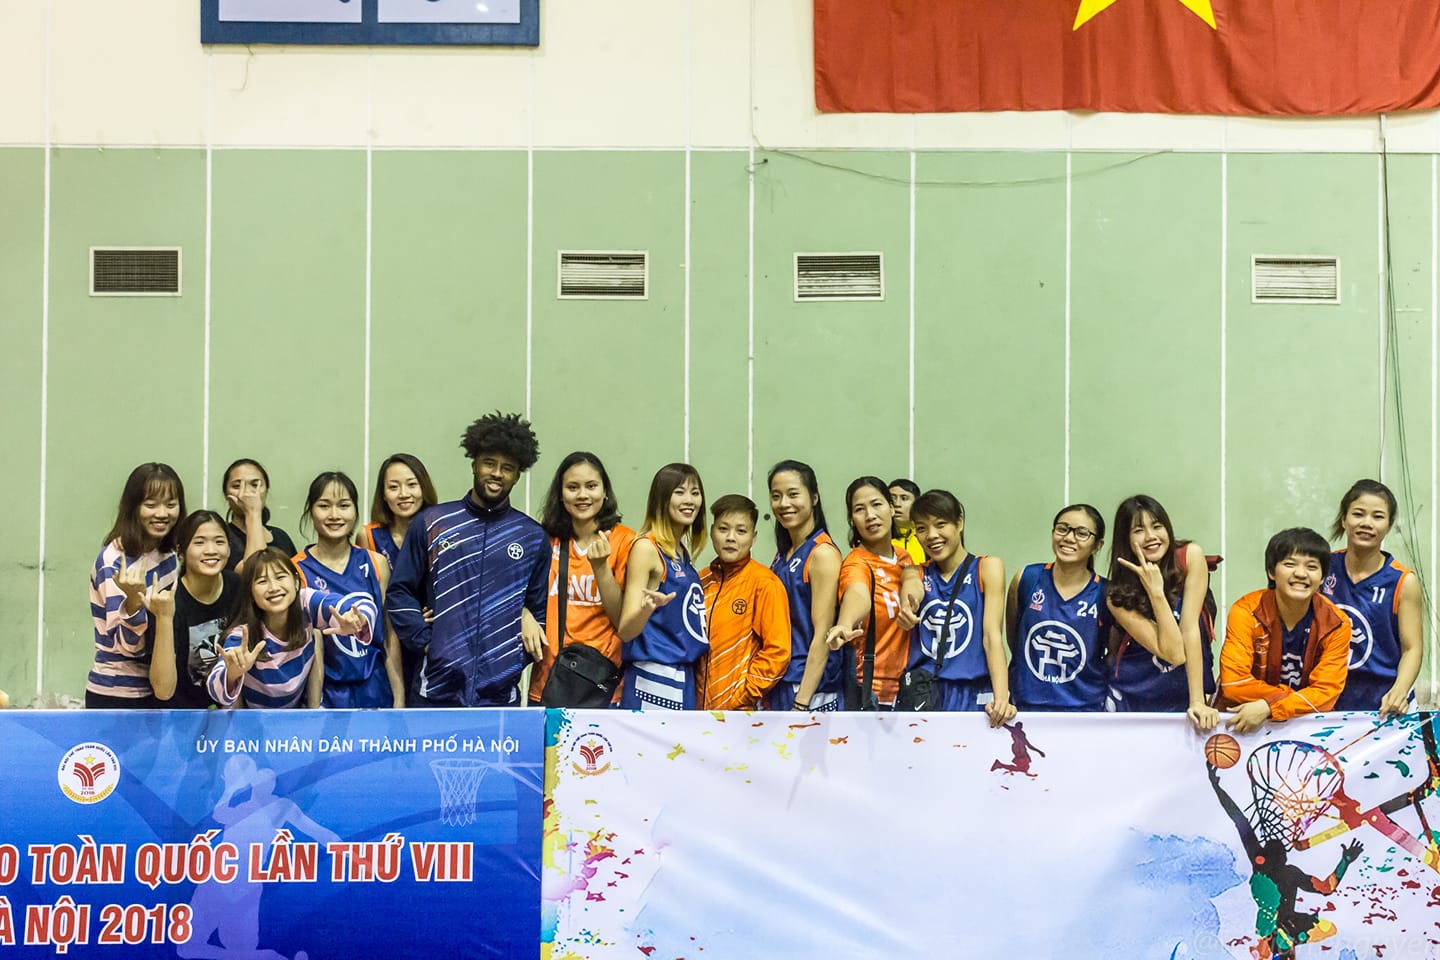 Nguyễn Hương Liên: Biệt danh Đồng nát quốc dân và thanh xuân sống chết với bóng rổ